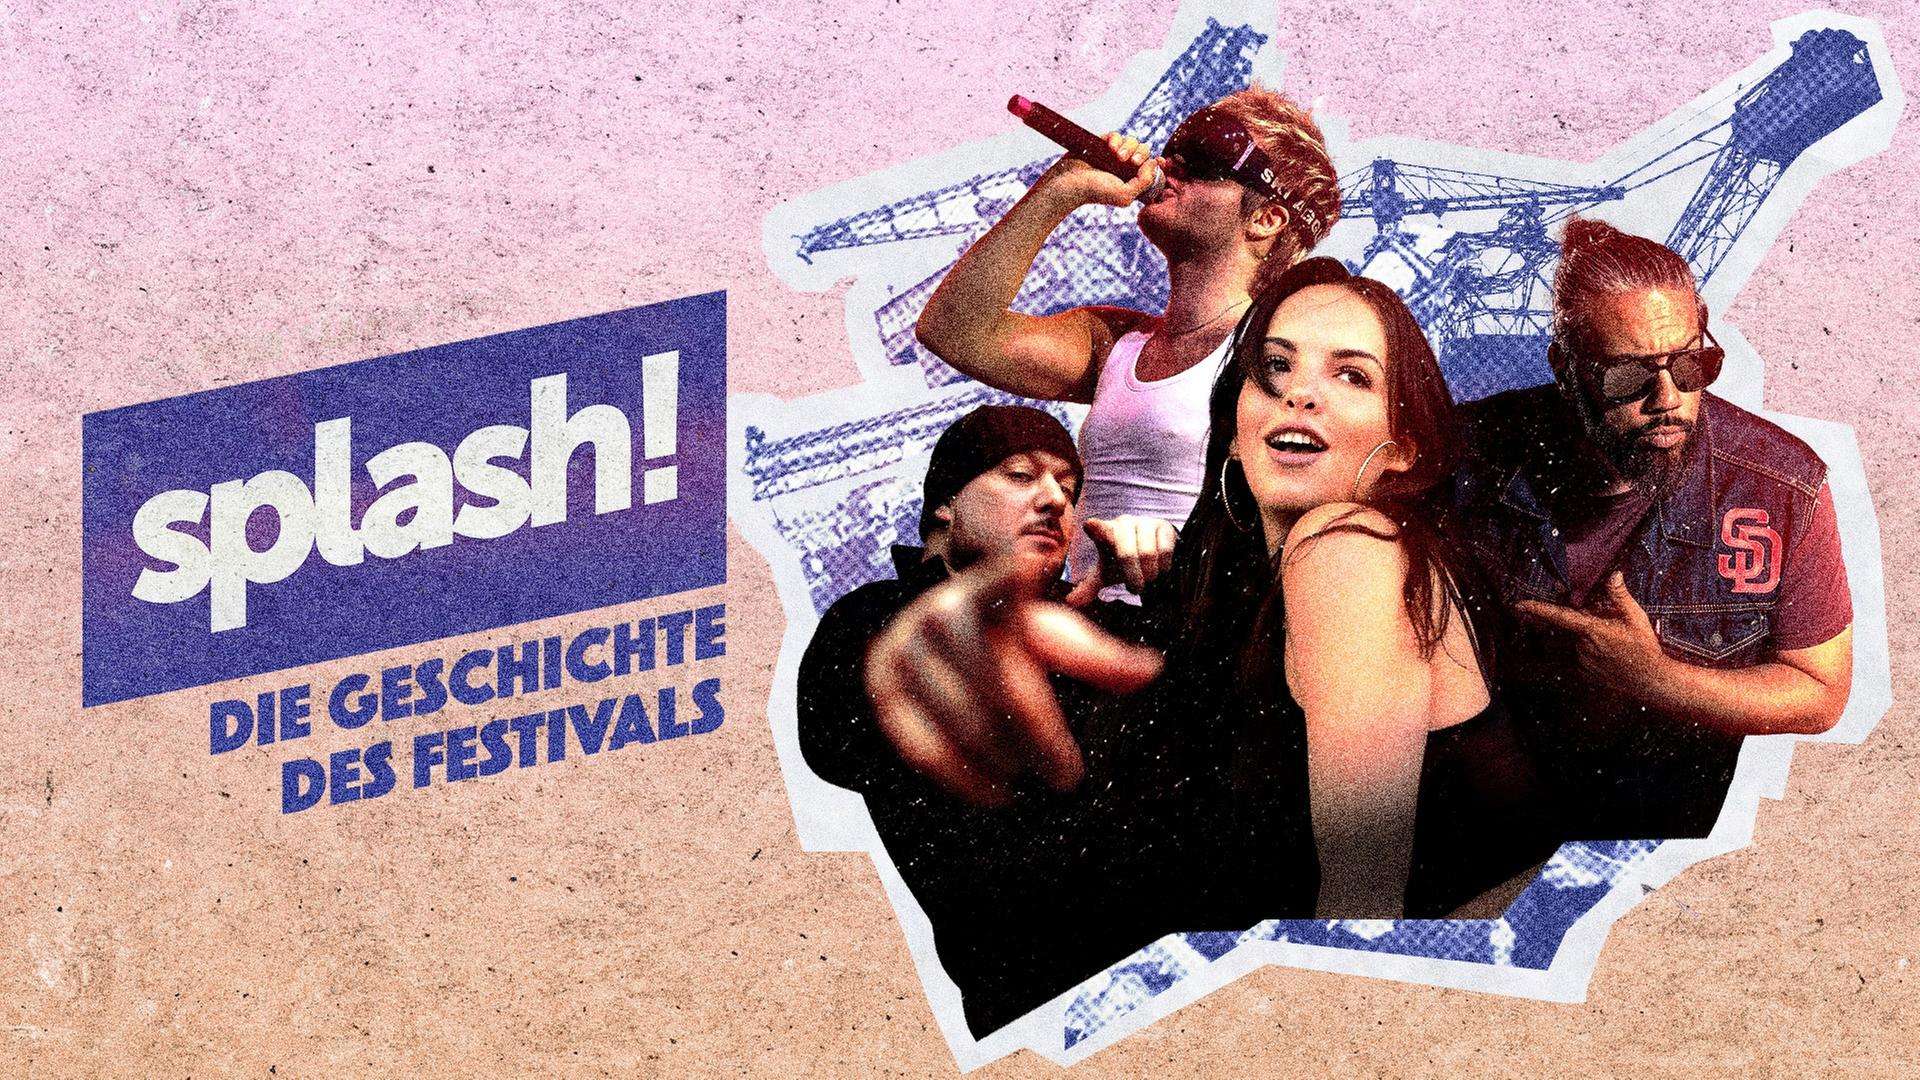 stilisierte Grafik zur neuen zweiteiligen Doku über die Geschichte des Splash!-Festivals mit Gesichtern von diversen Hip-Hop-Künstlern